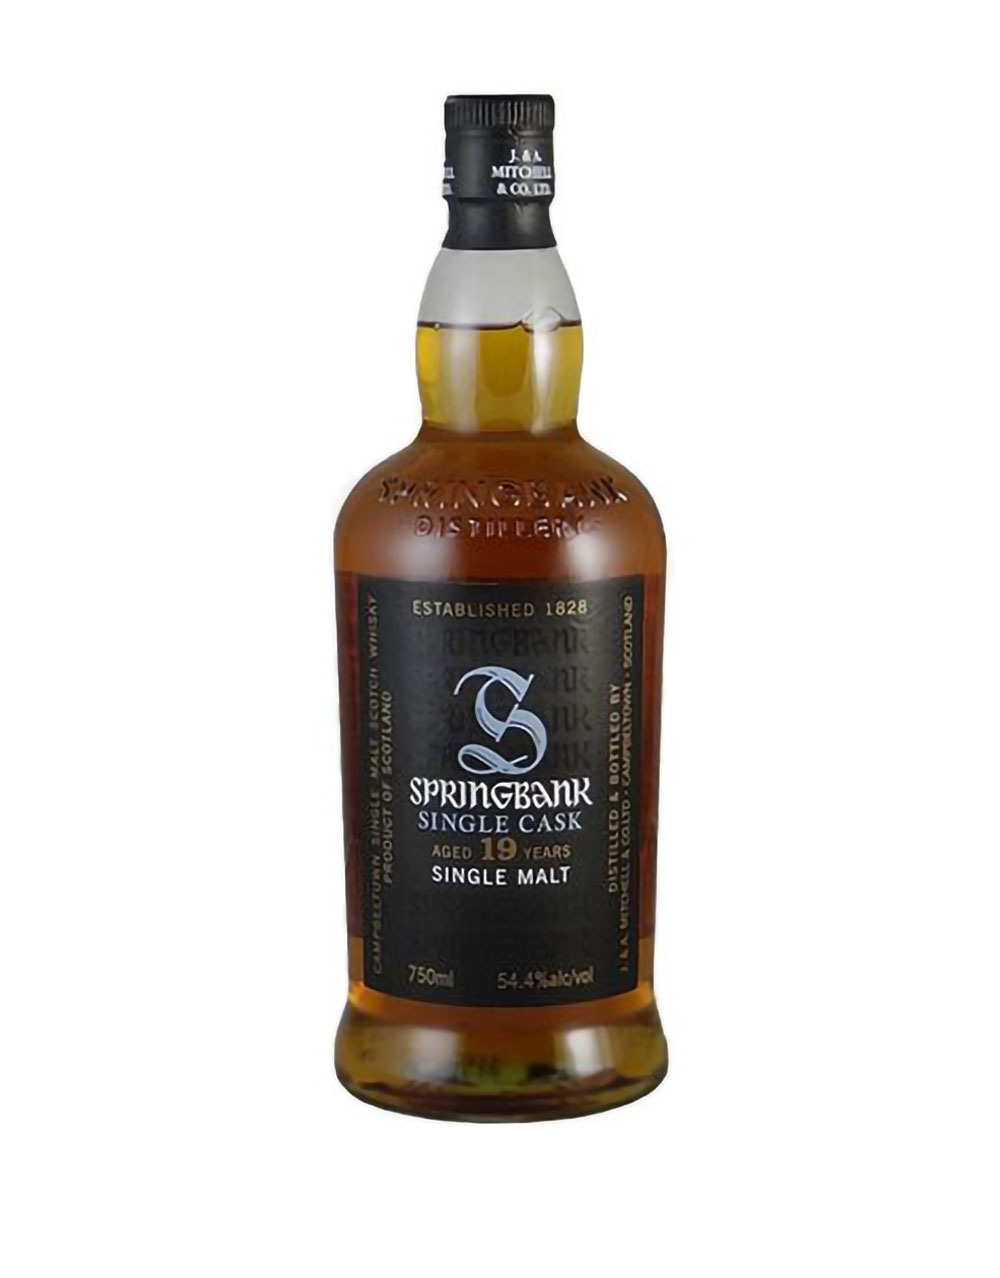 Springbank 19 Year Old Single Cask Single Malt Scotch Whisky (Cask Strength)